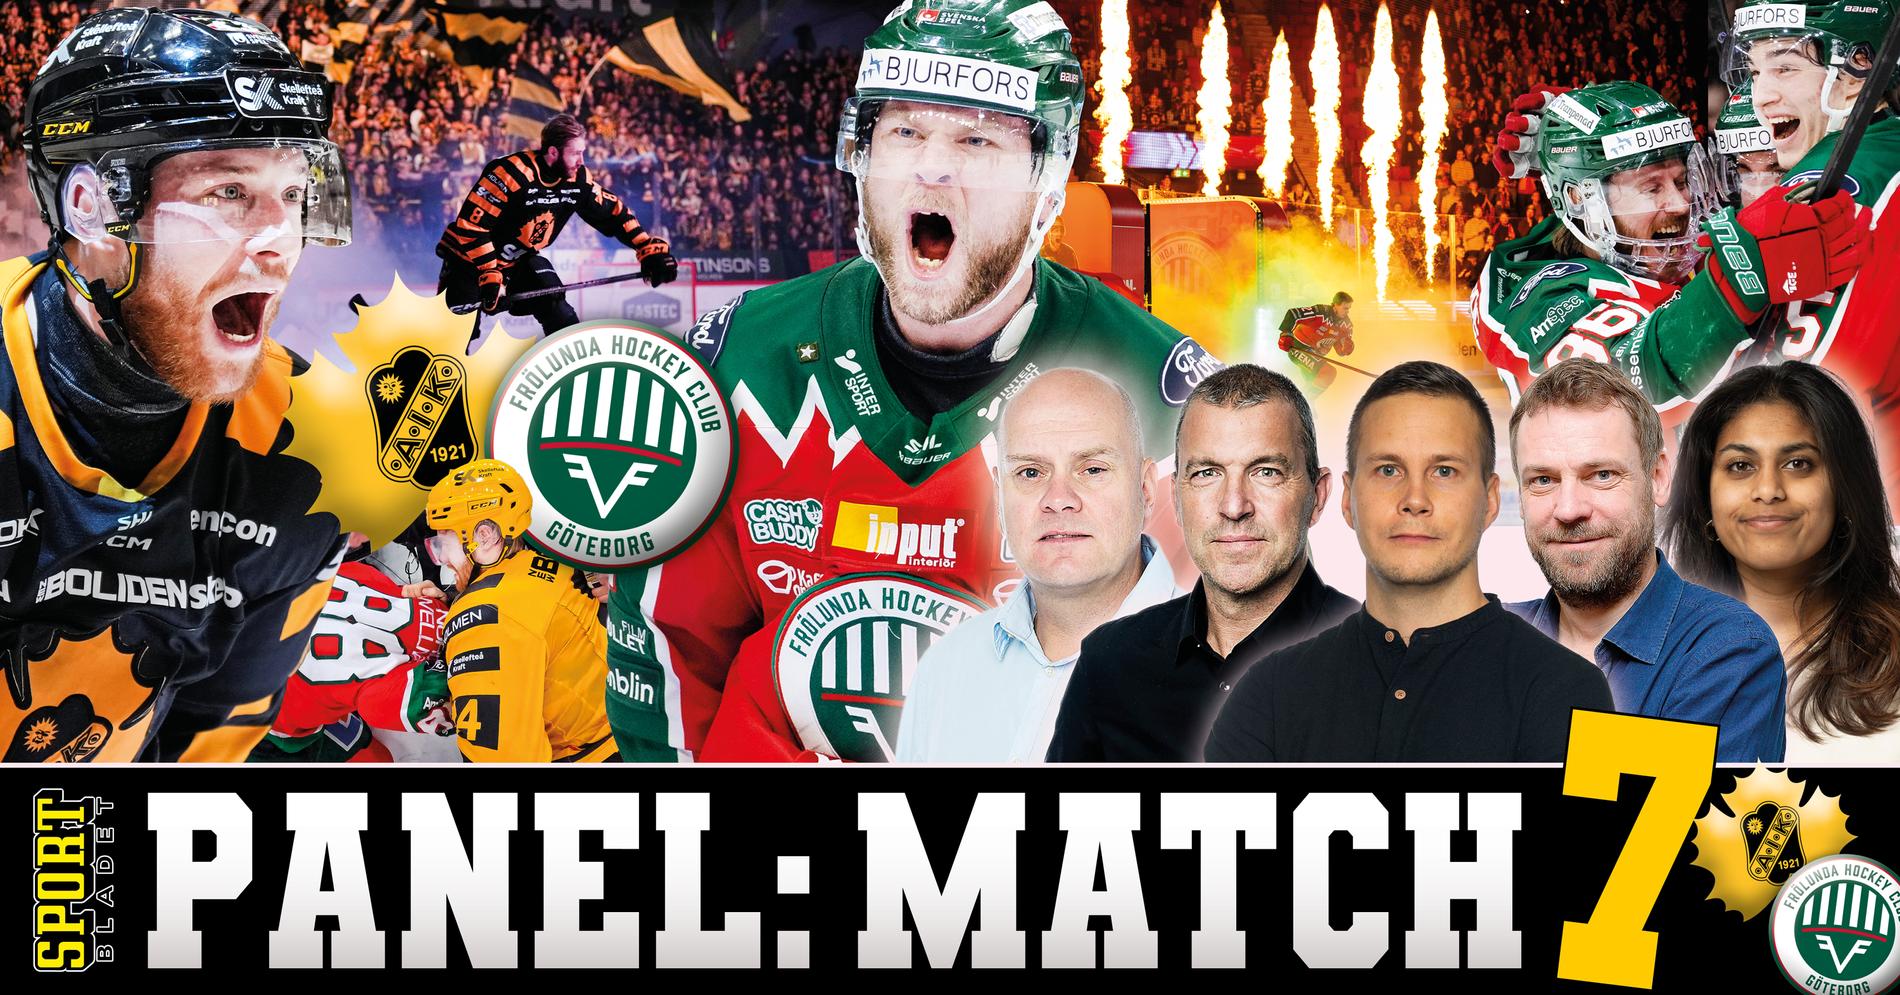 Match 7-panel: Så slutar rysaren mellan Skellefteå och Frölunda